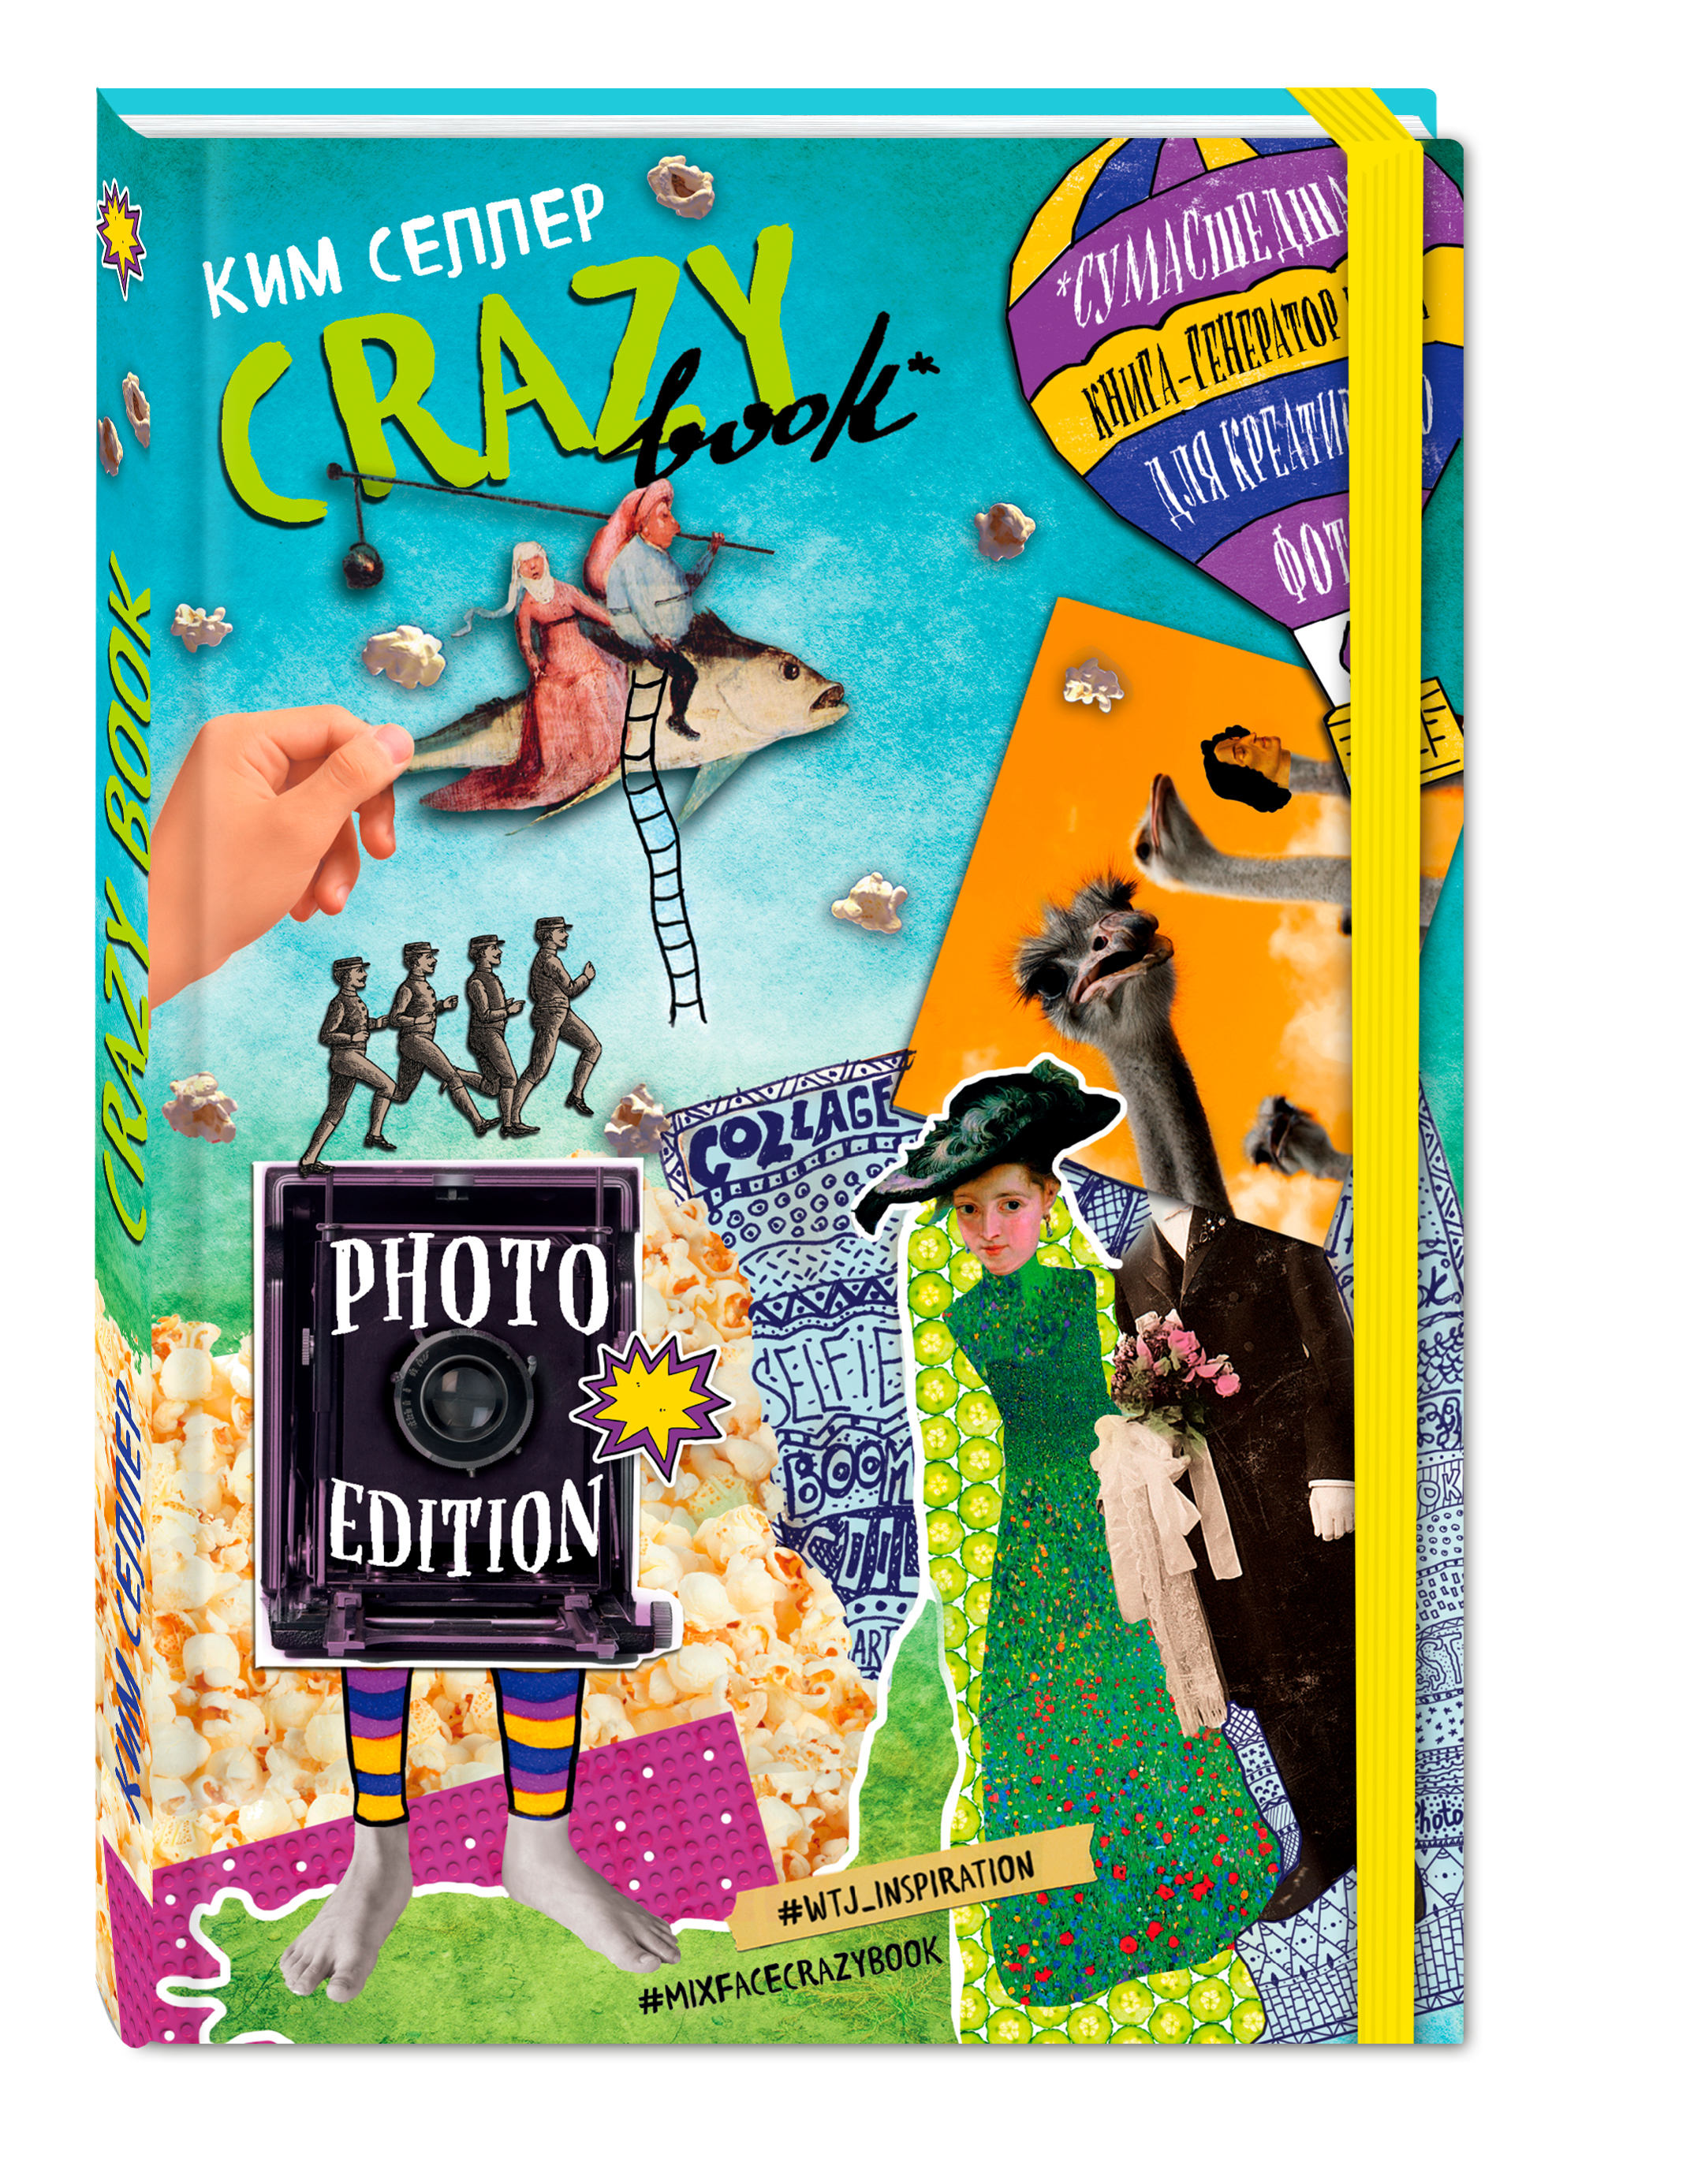 Ким Селлер Crazy book. Photo edition. Сумасшедшая книга-генератор идей для креативных фото (обложка с коллажем)